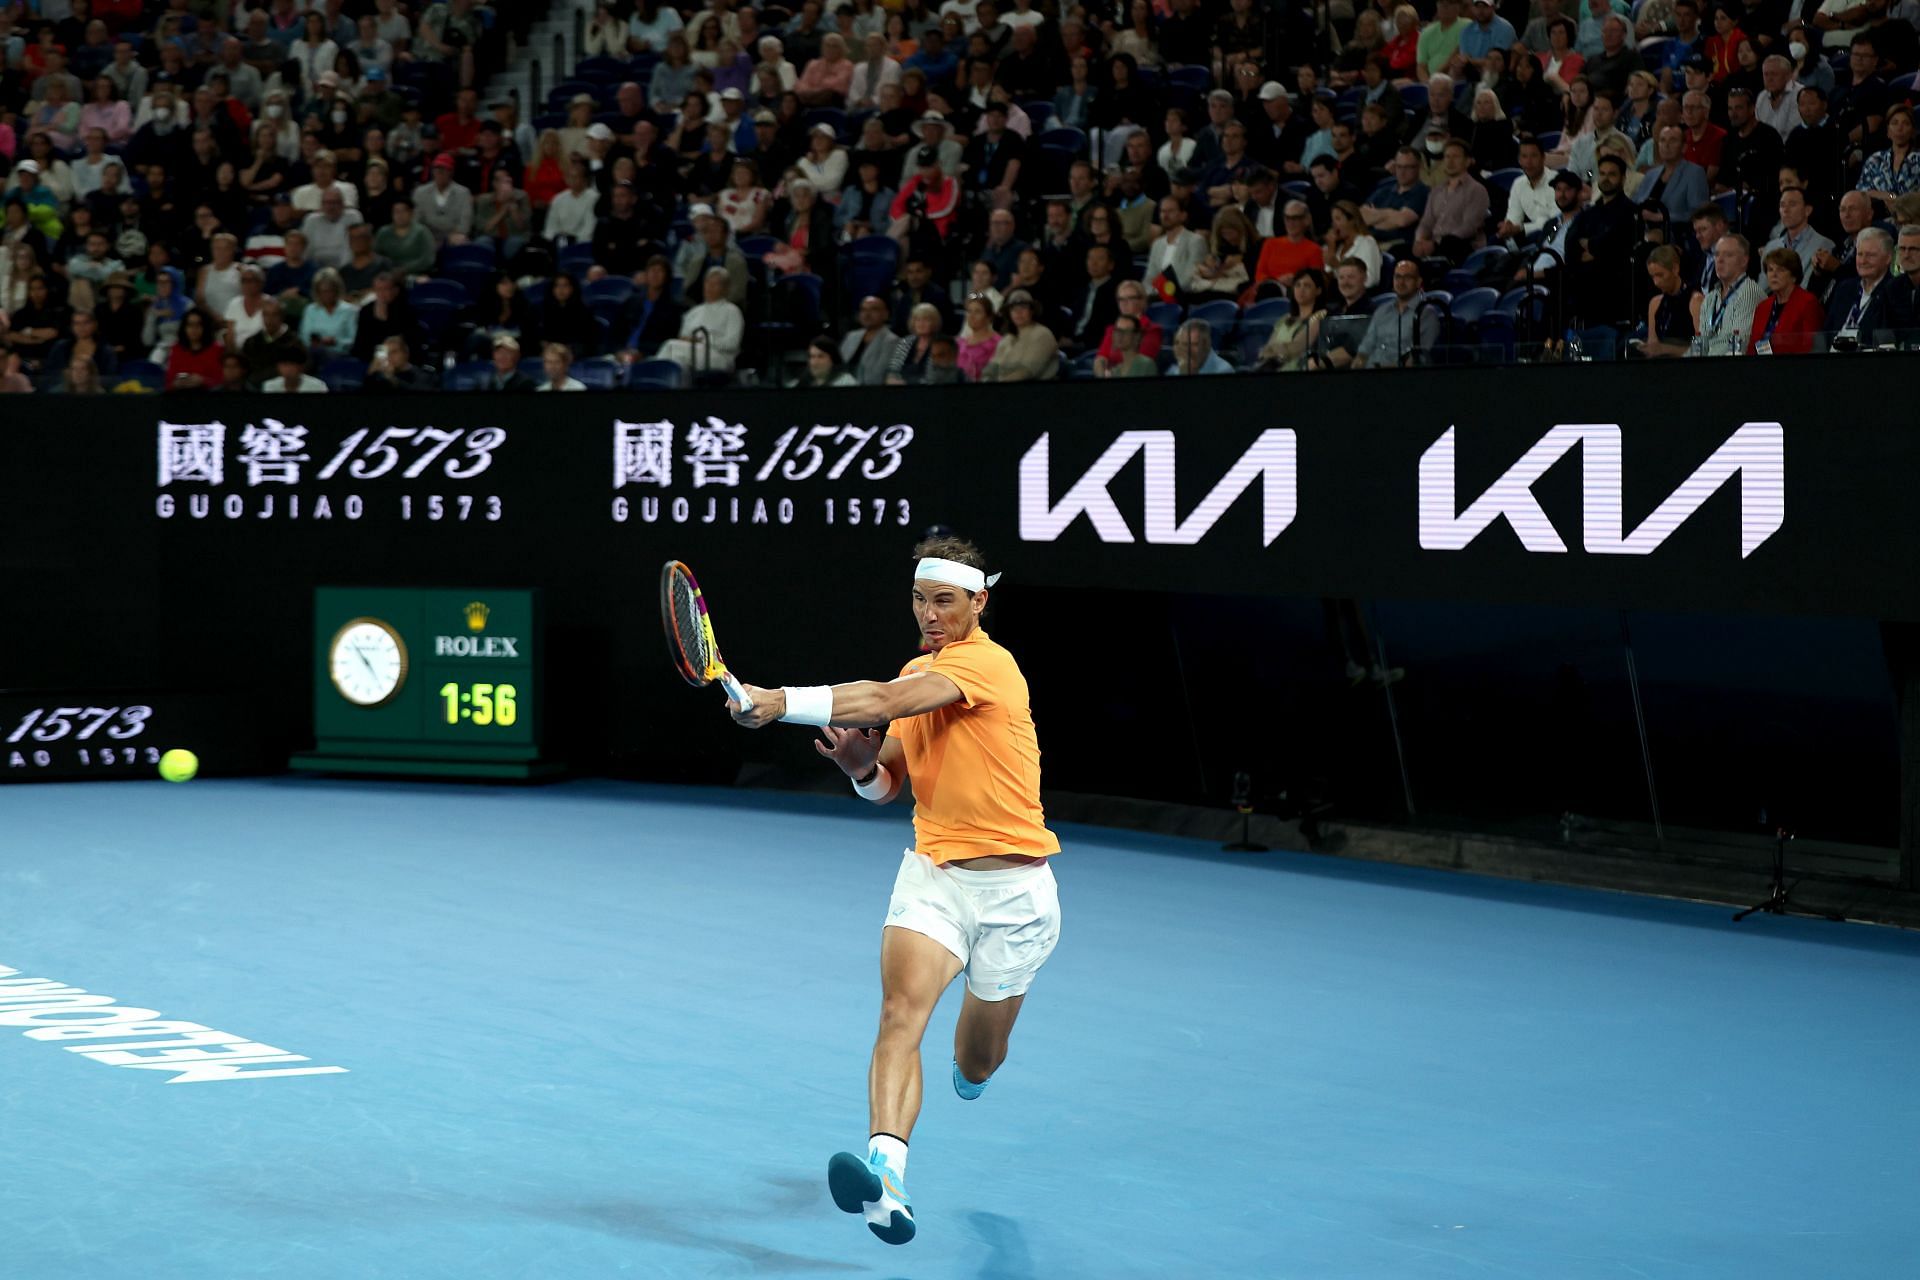 2023 Australian Open - Day 3: Rafael Nadal